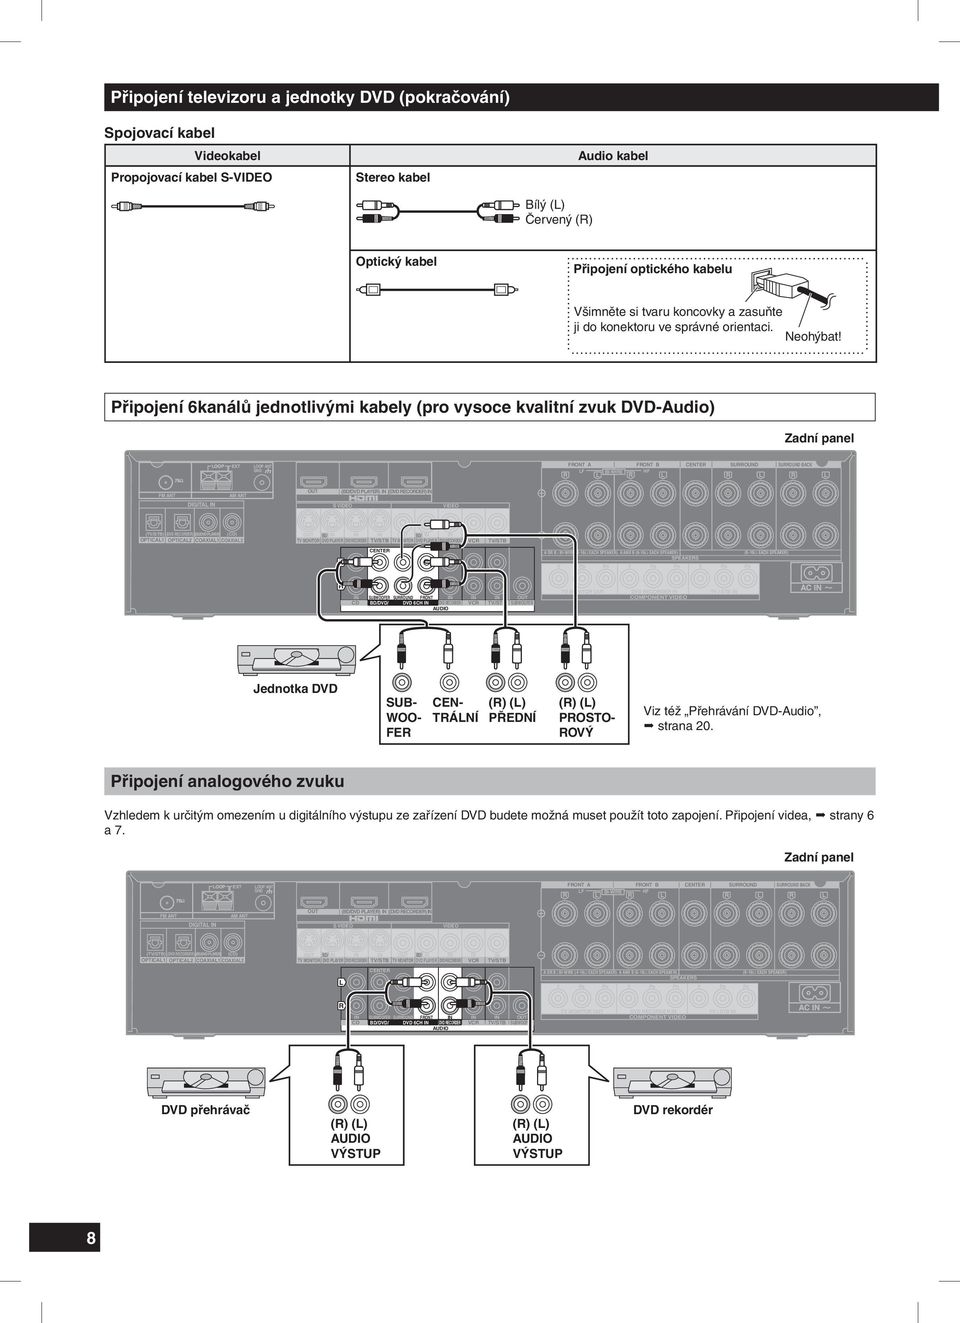 Připojení 6kanálů jednotlivými kabely (pro vysoce kvalitní zvuk DVD-Audio) Zadní panel Jednotka DVD SUBWOOFER SUB- CEN- CENTER WOO- TRÁLNÍ FER (R) (L) FRONT PŘEDNÍ (R) (L) SURROUND PROSTO-